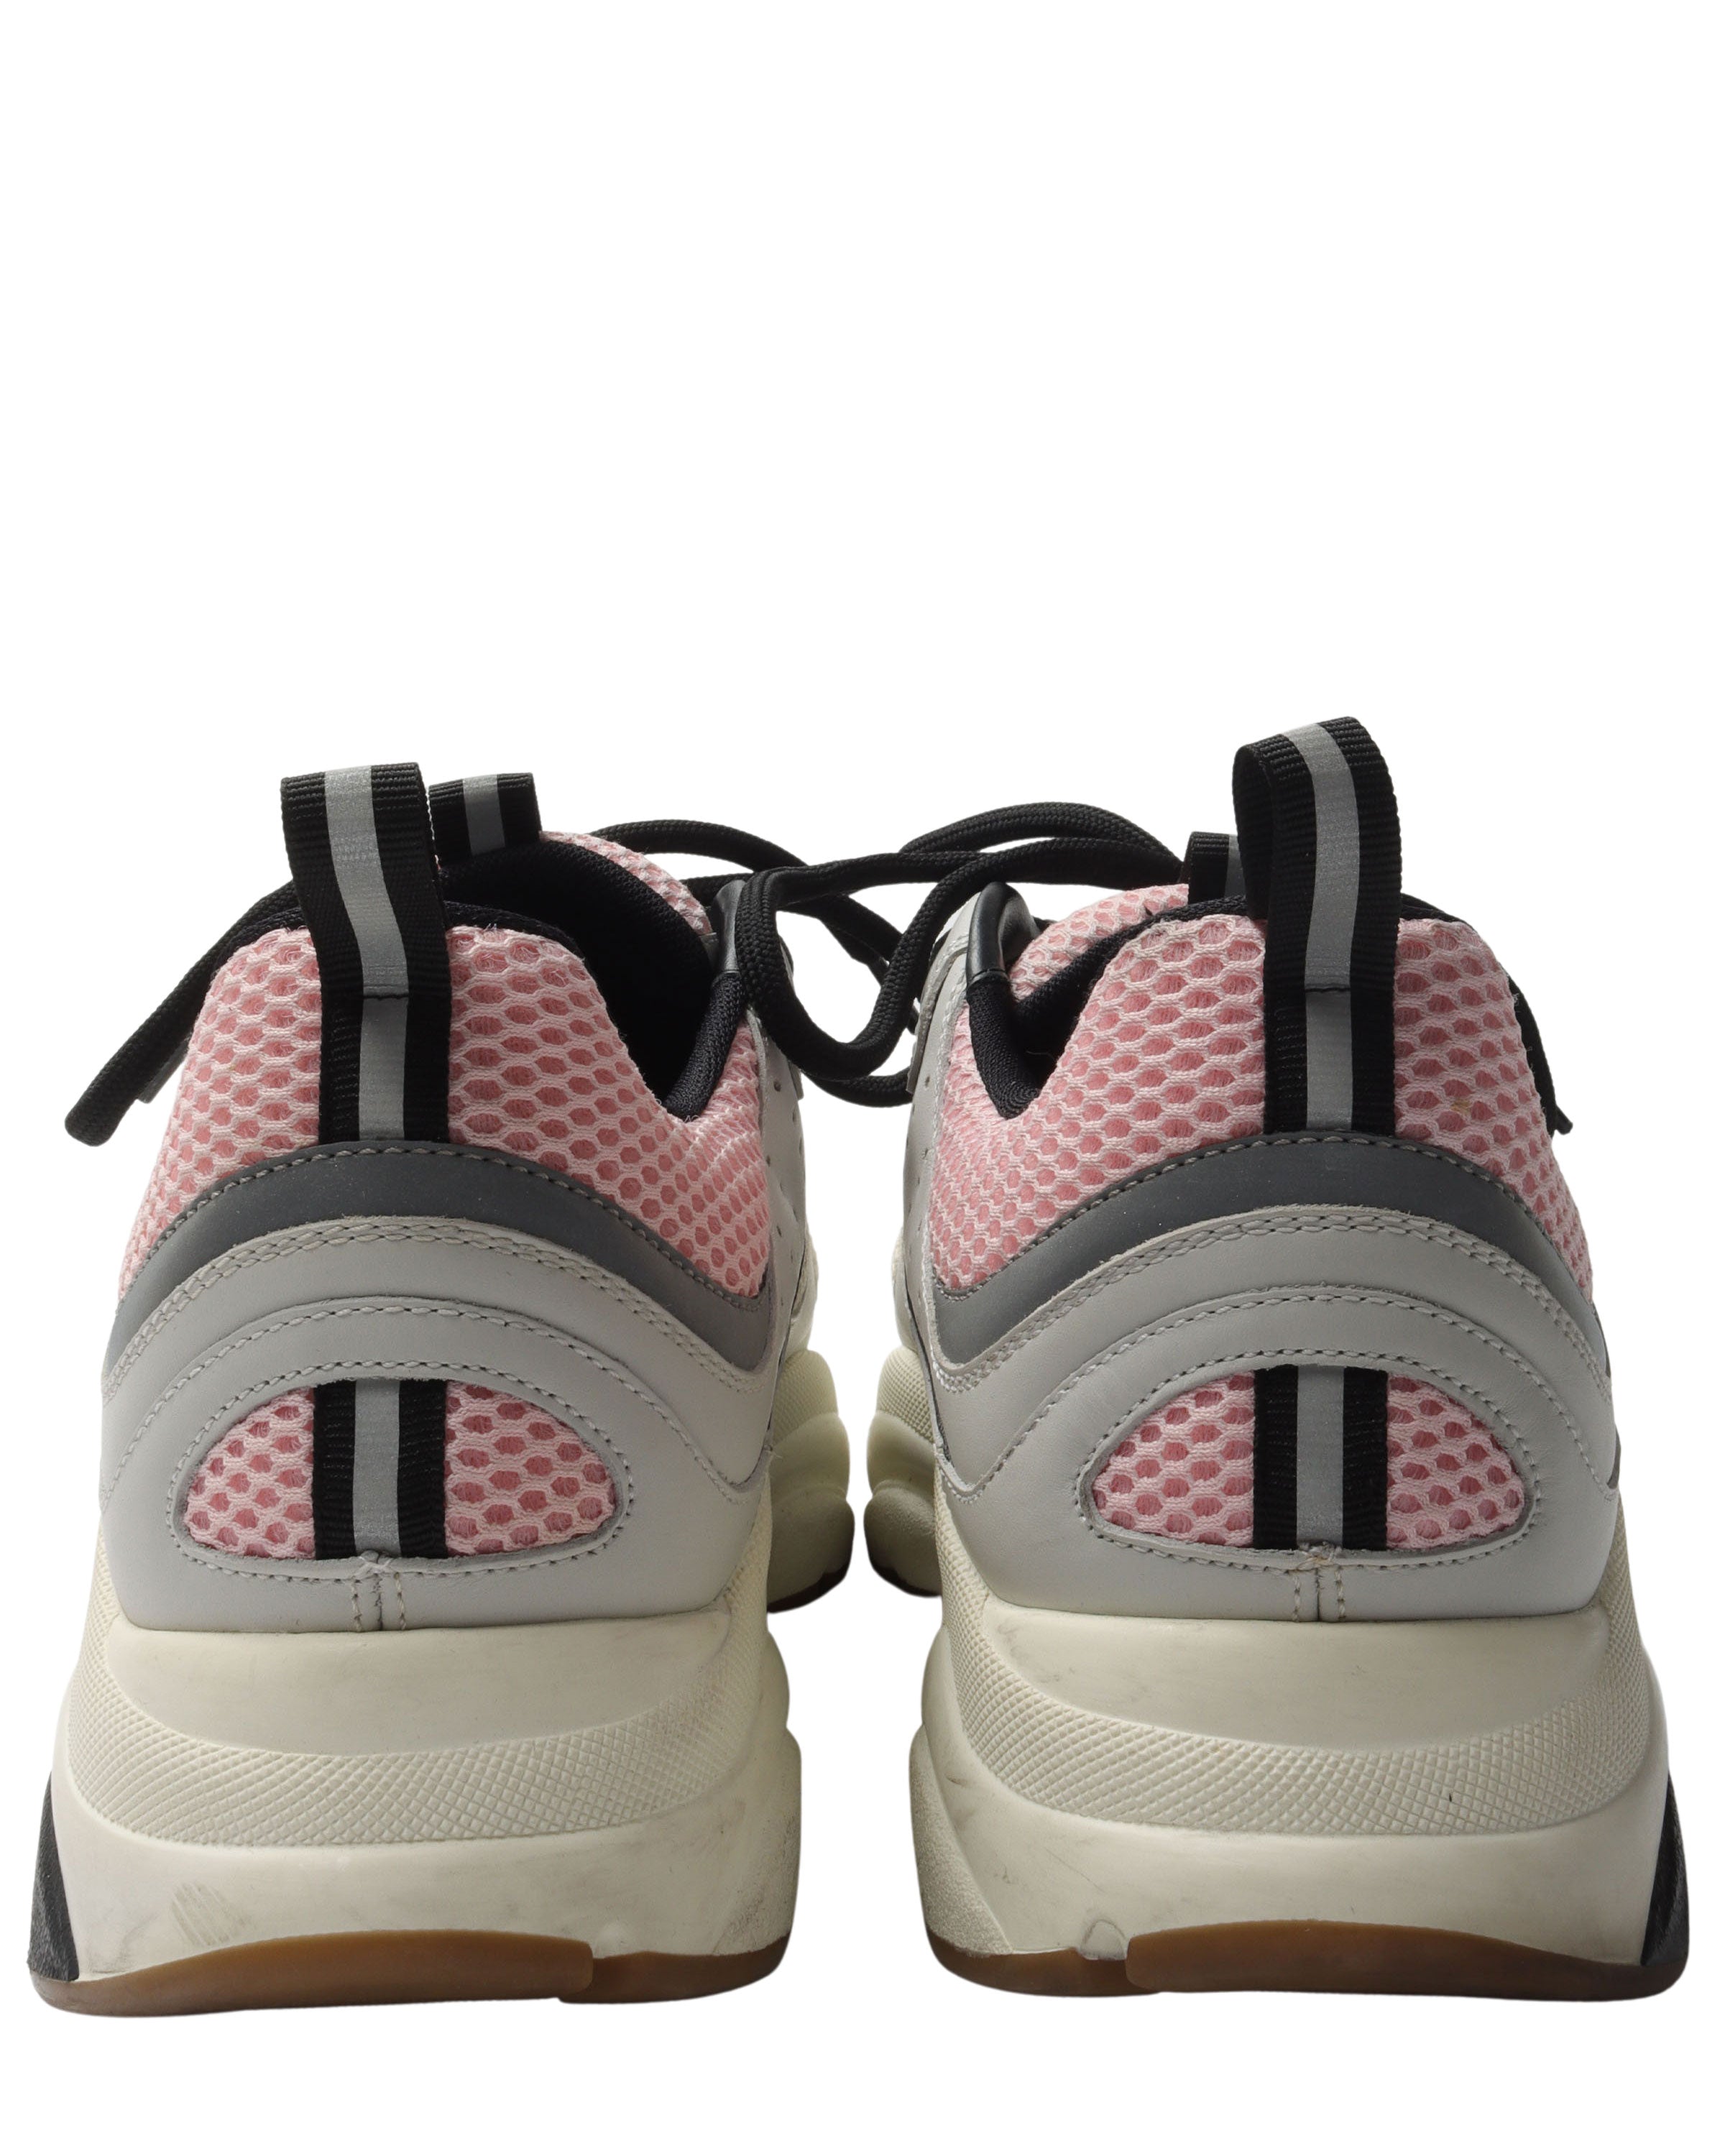 B22 Sneakers Pink